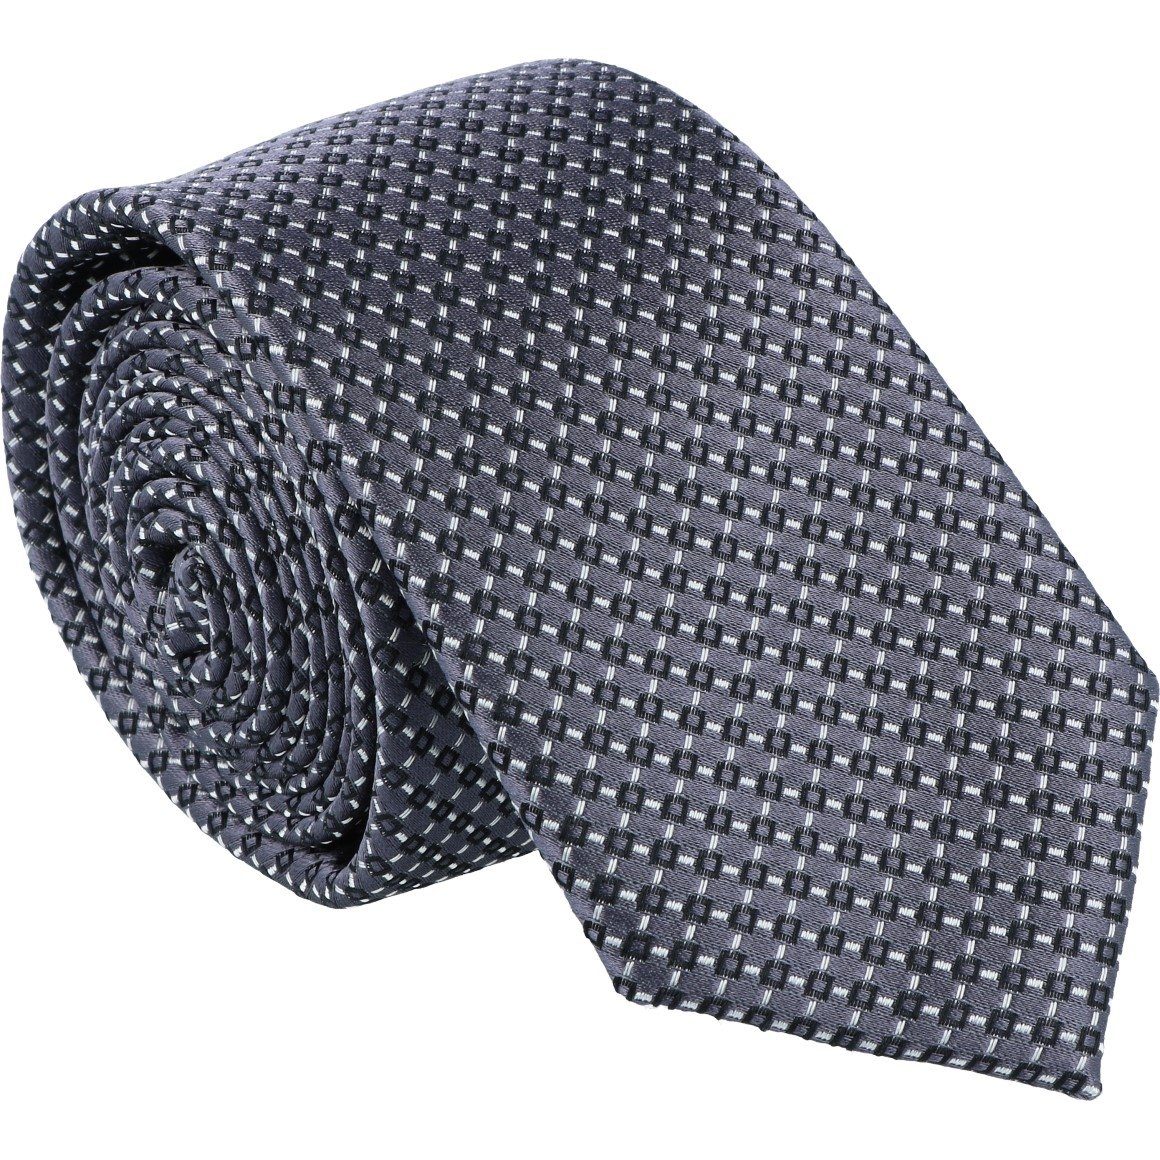 WILLEN Krawatte grau Krawatte Willen